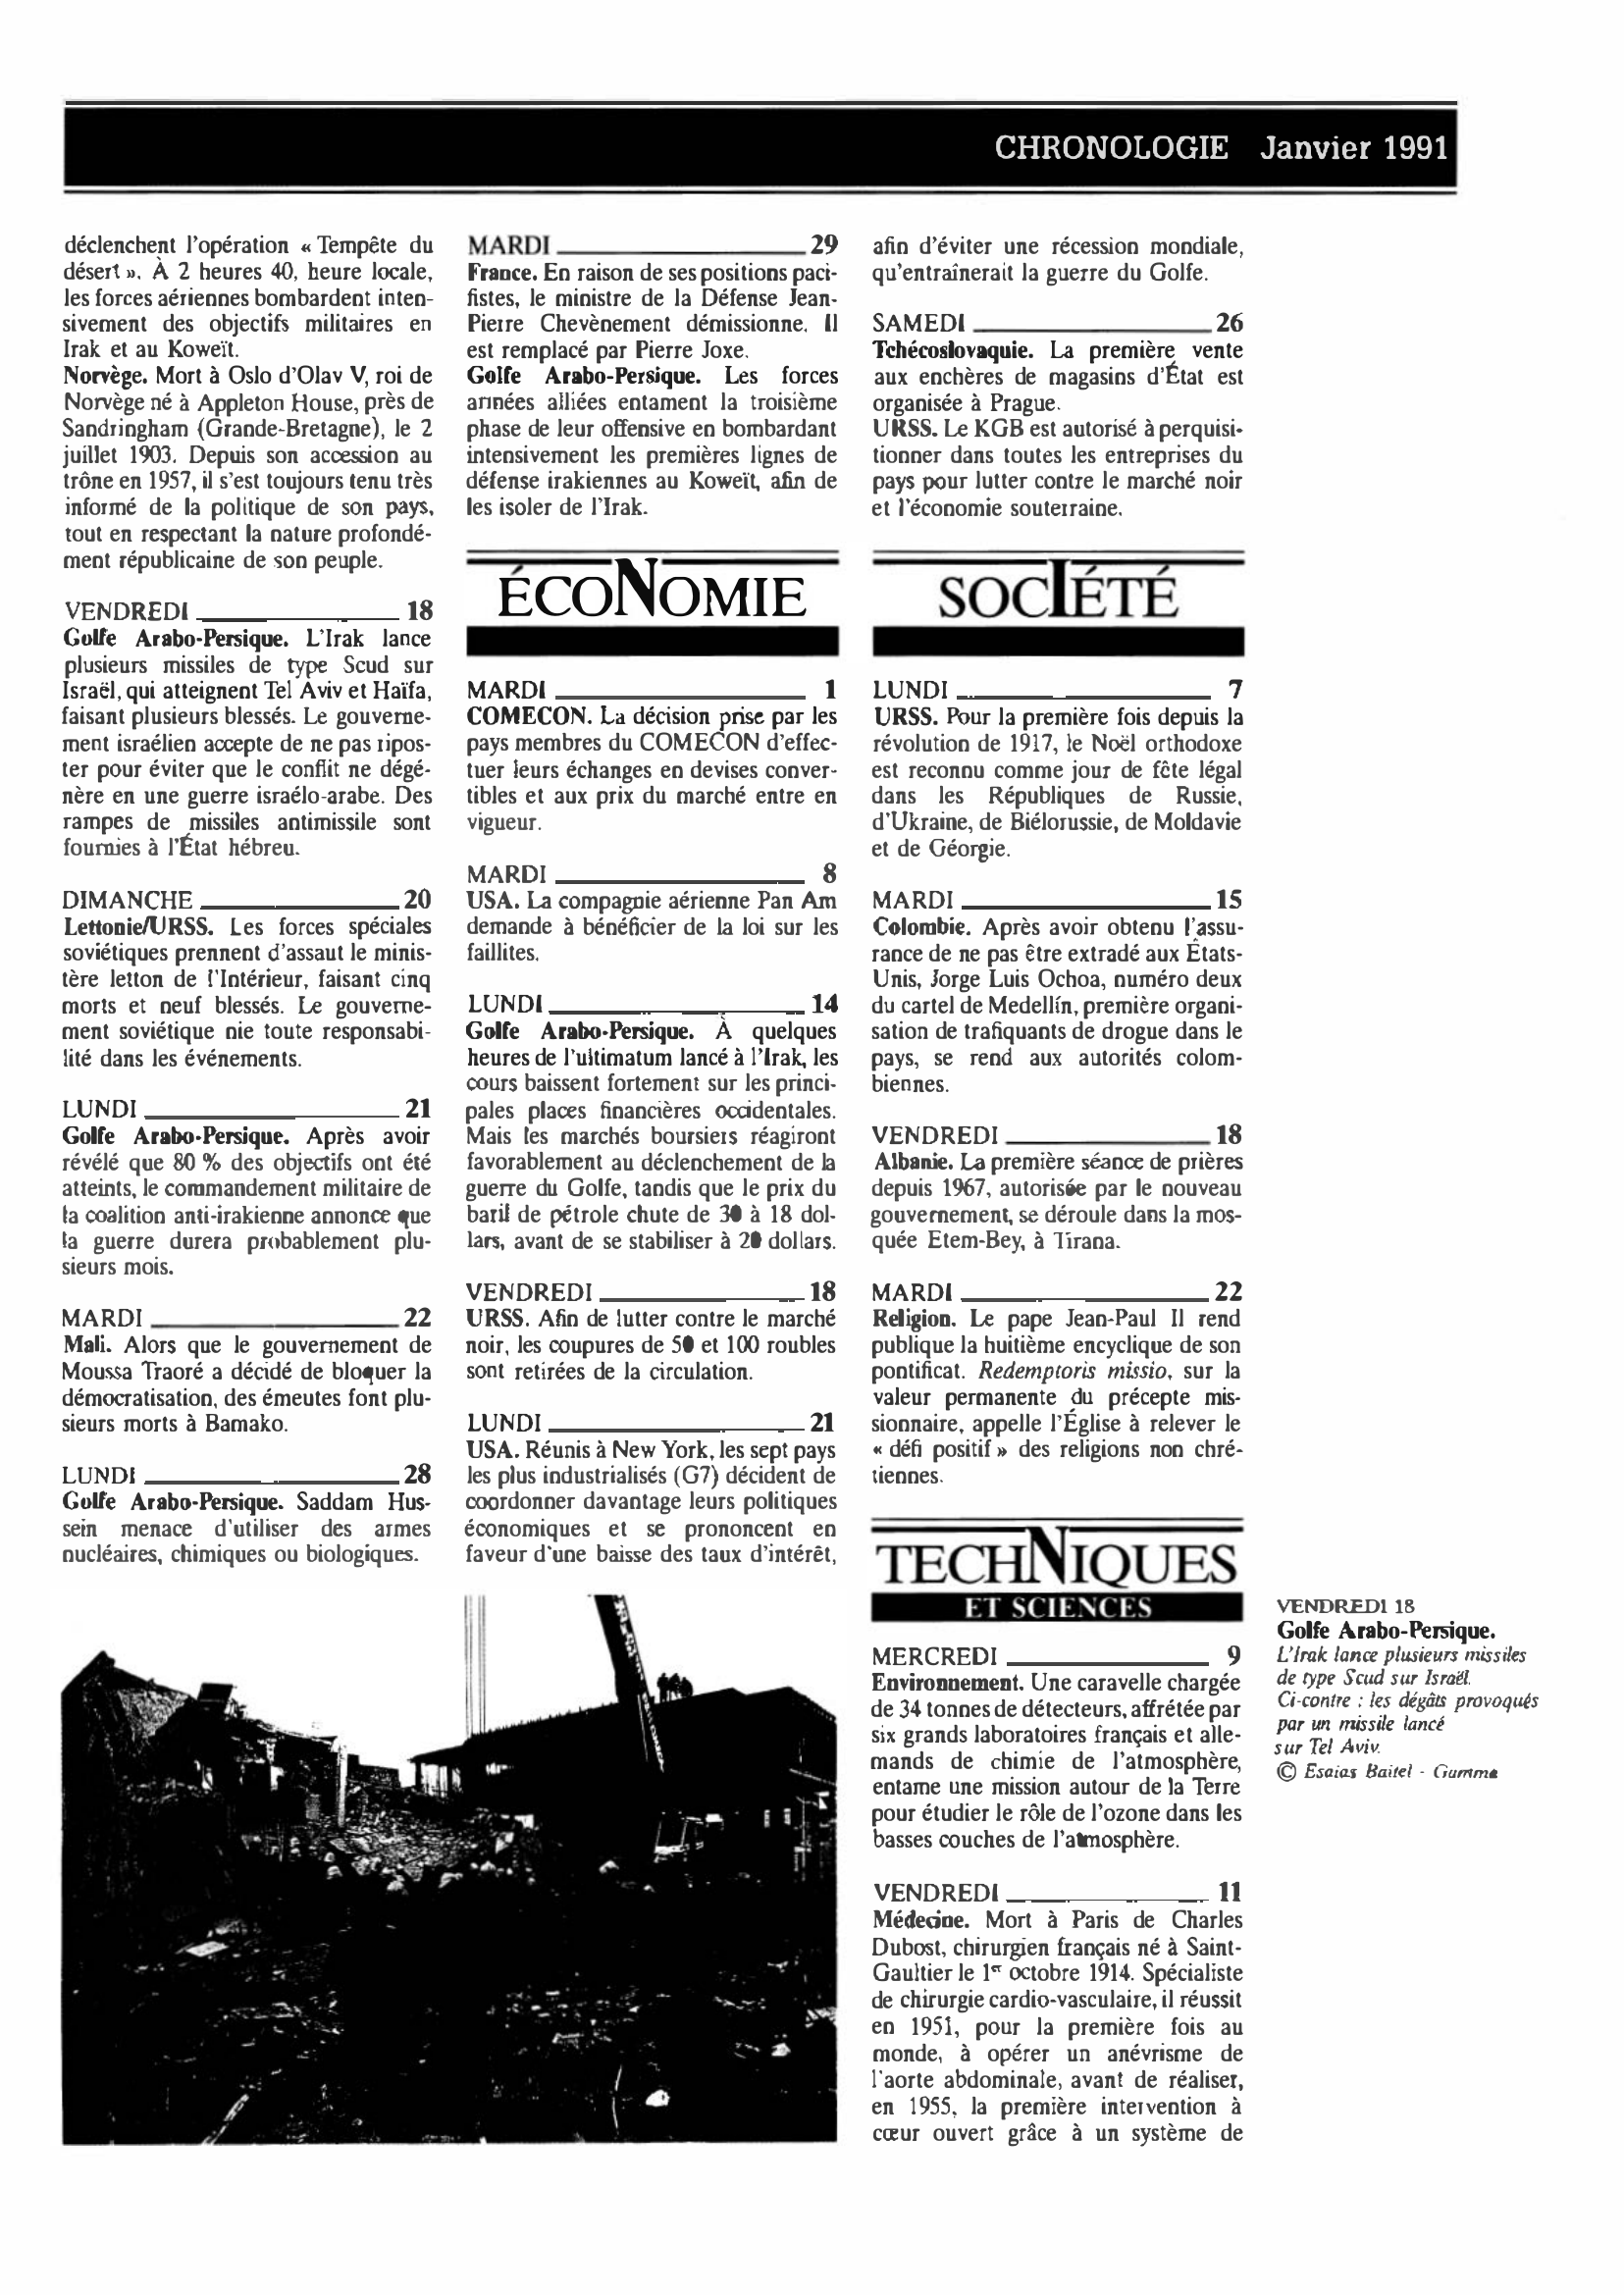 Prévisualisation du document CHRONOLOGIE Janvier 1991 dans le monde (histoire chronologique)